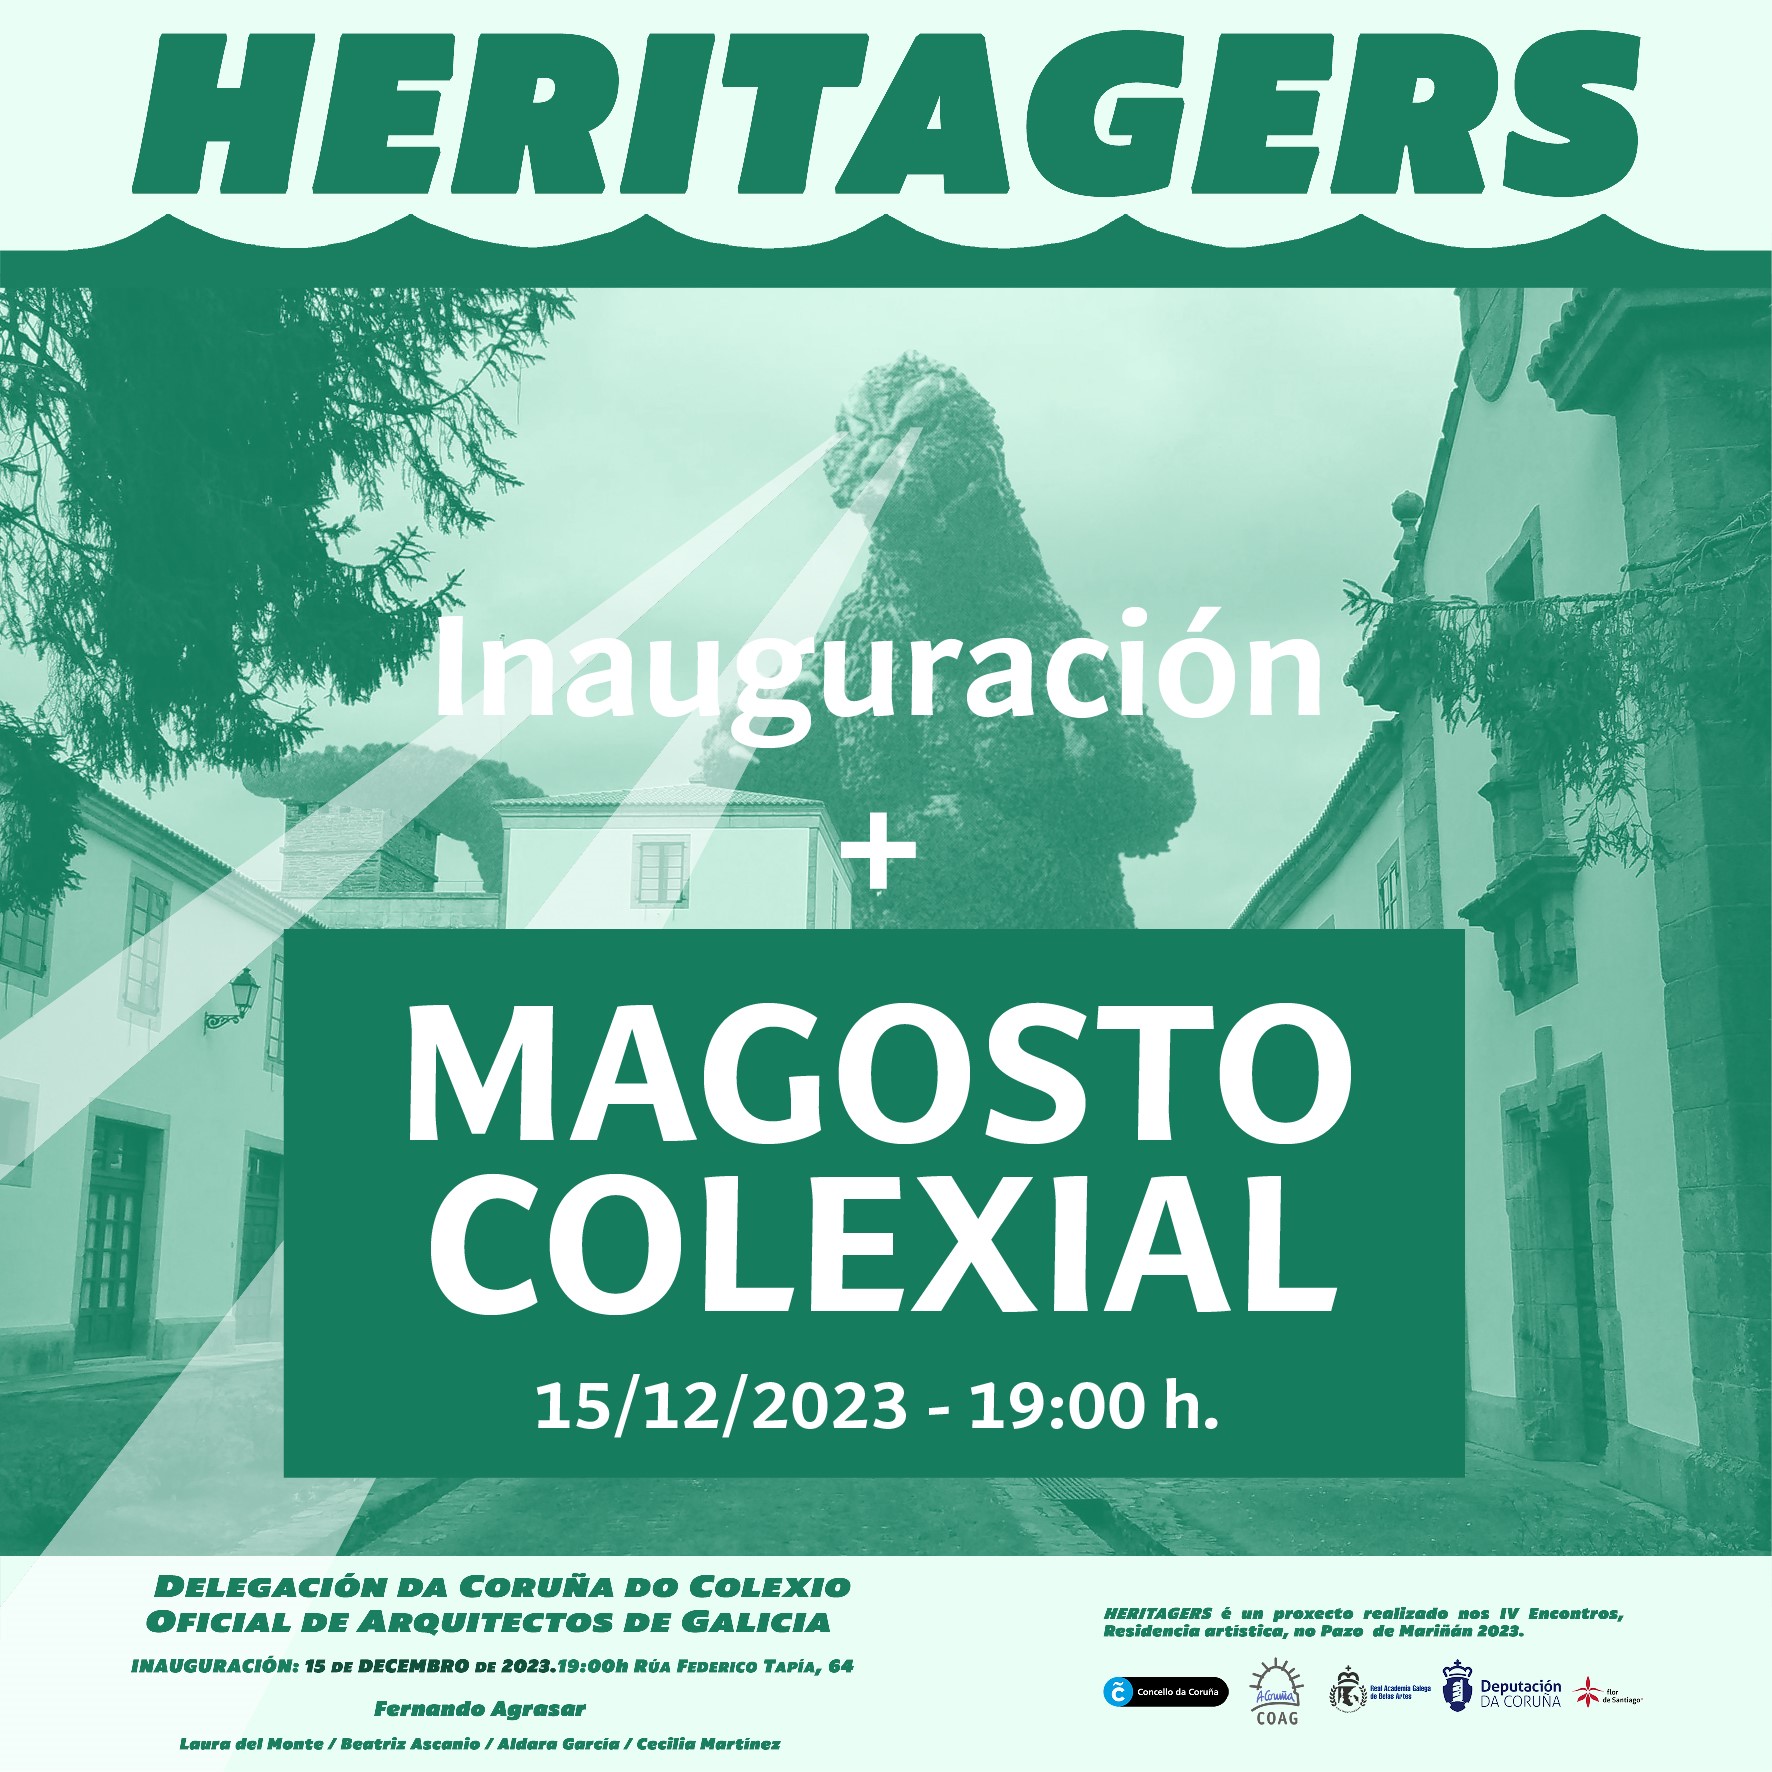 Exposición Heritagers + Magosto colegial